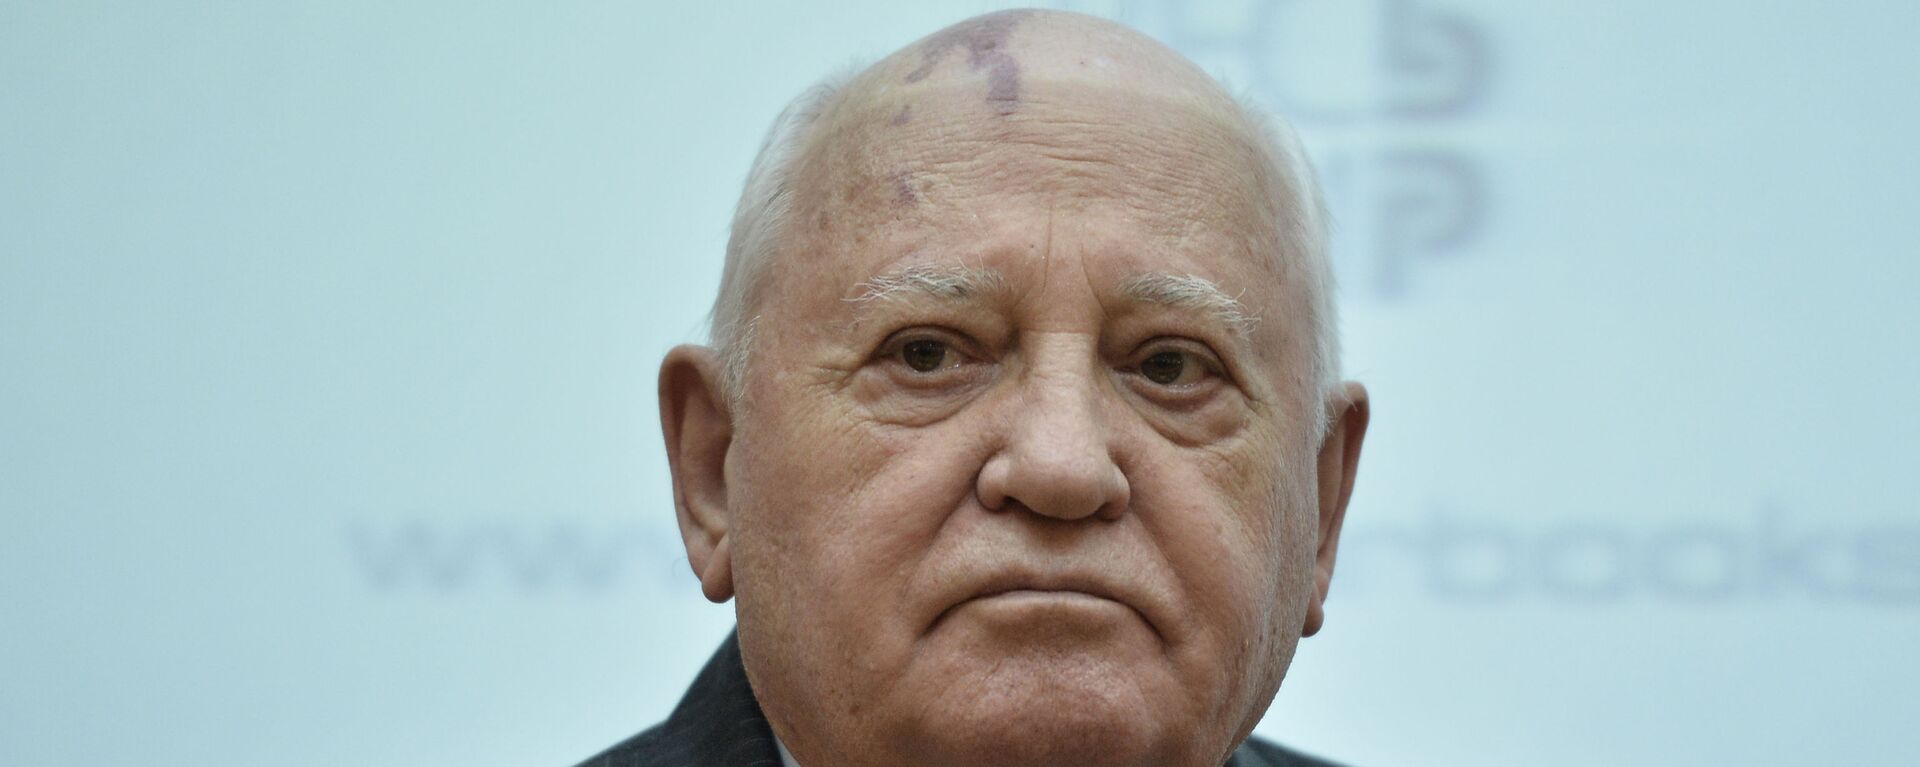 Buvęs TSRS prezidentas Michailas Gorbačiovas - Sputnik Lietuva, 1920, 02.03.2021